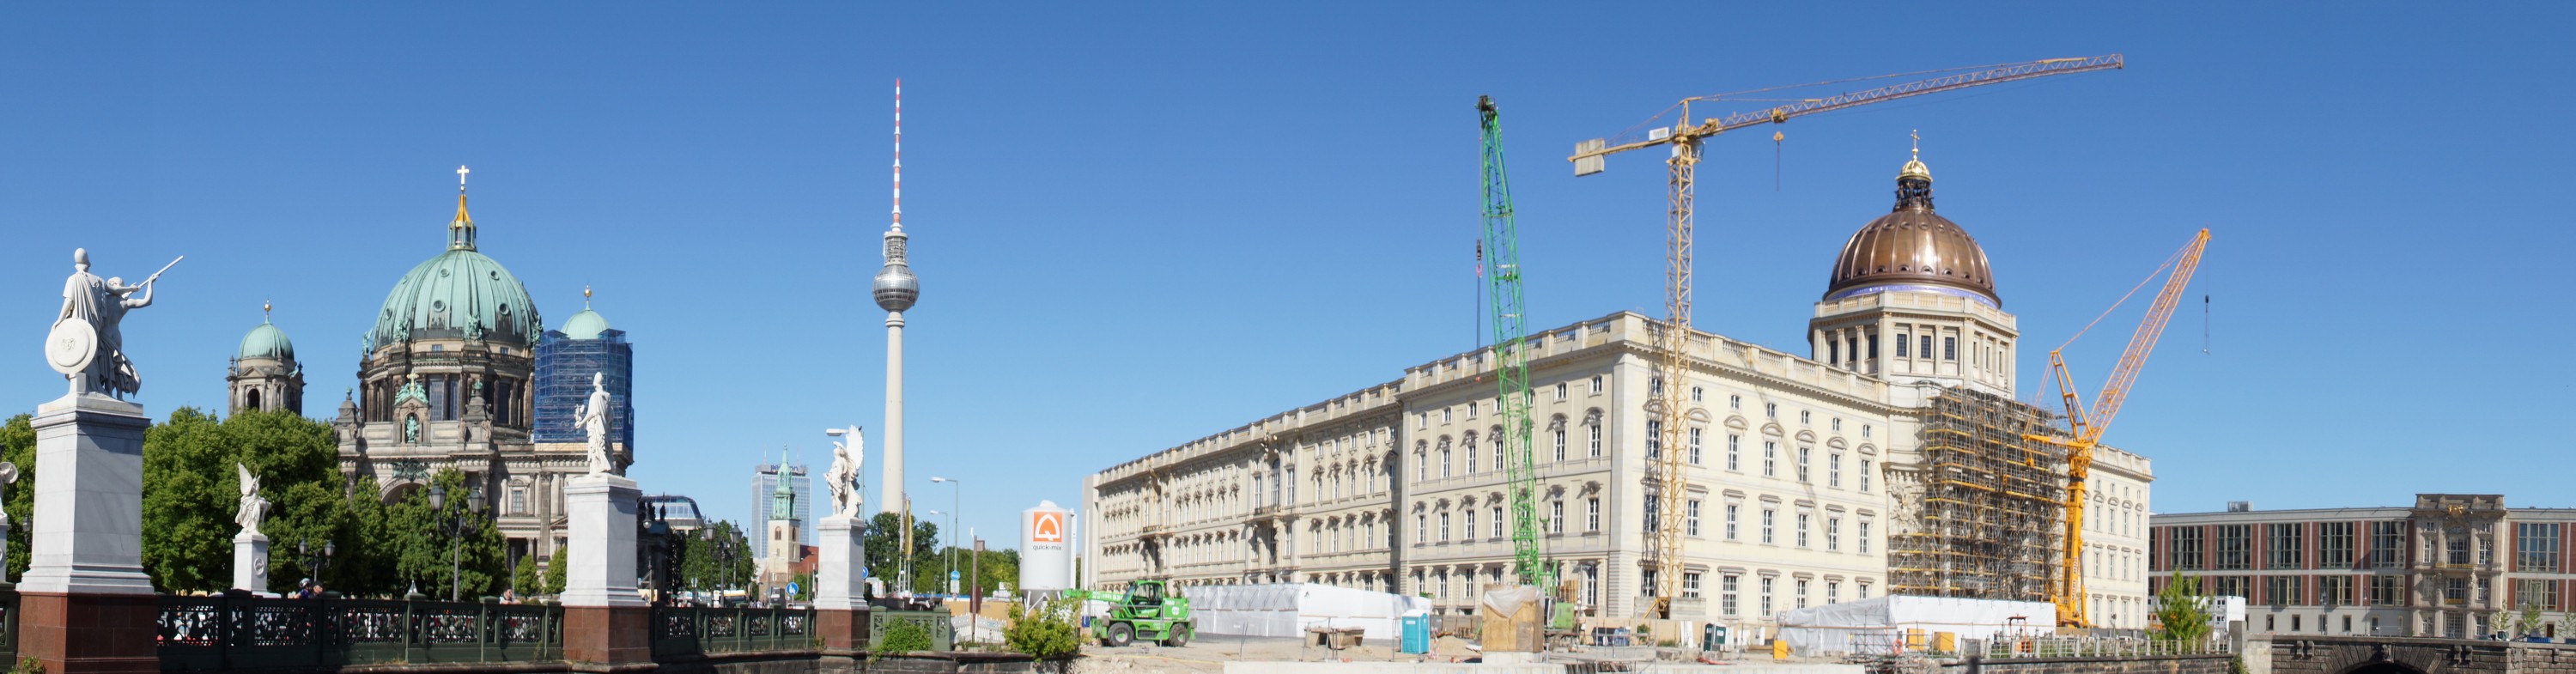 Berliner Stadtschloss am Pfingstmontag 2020